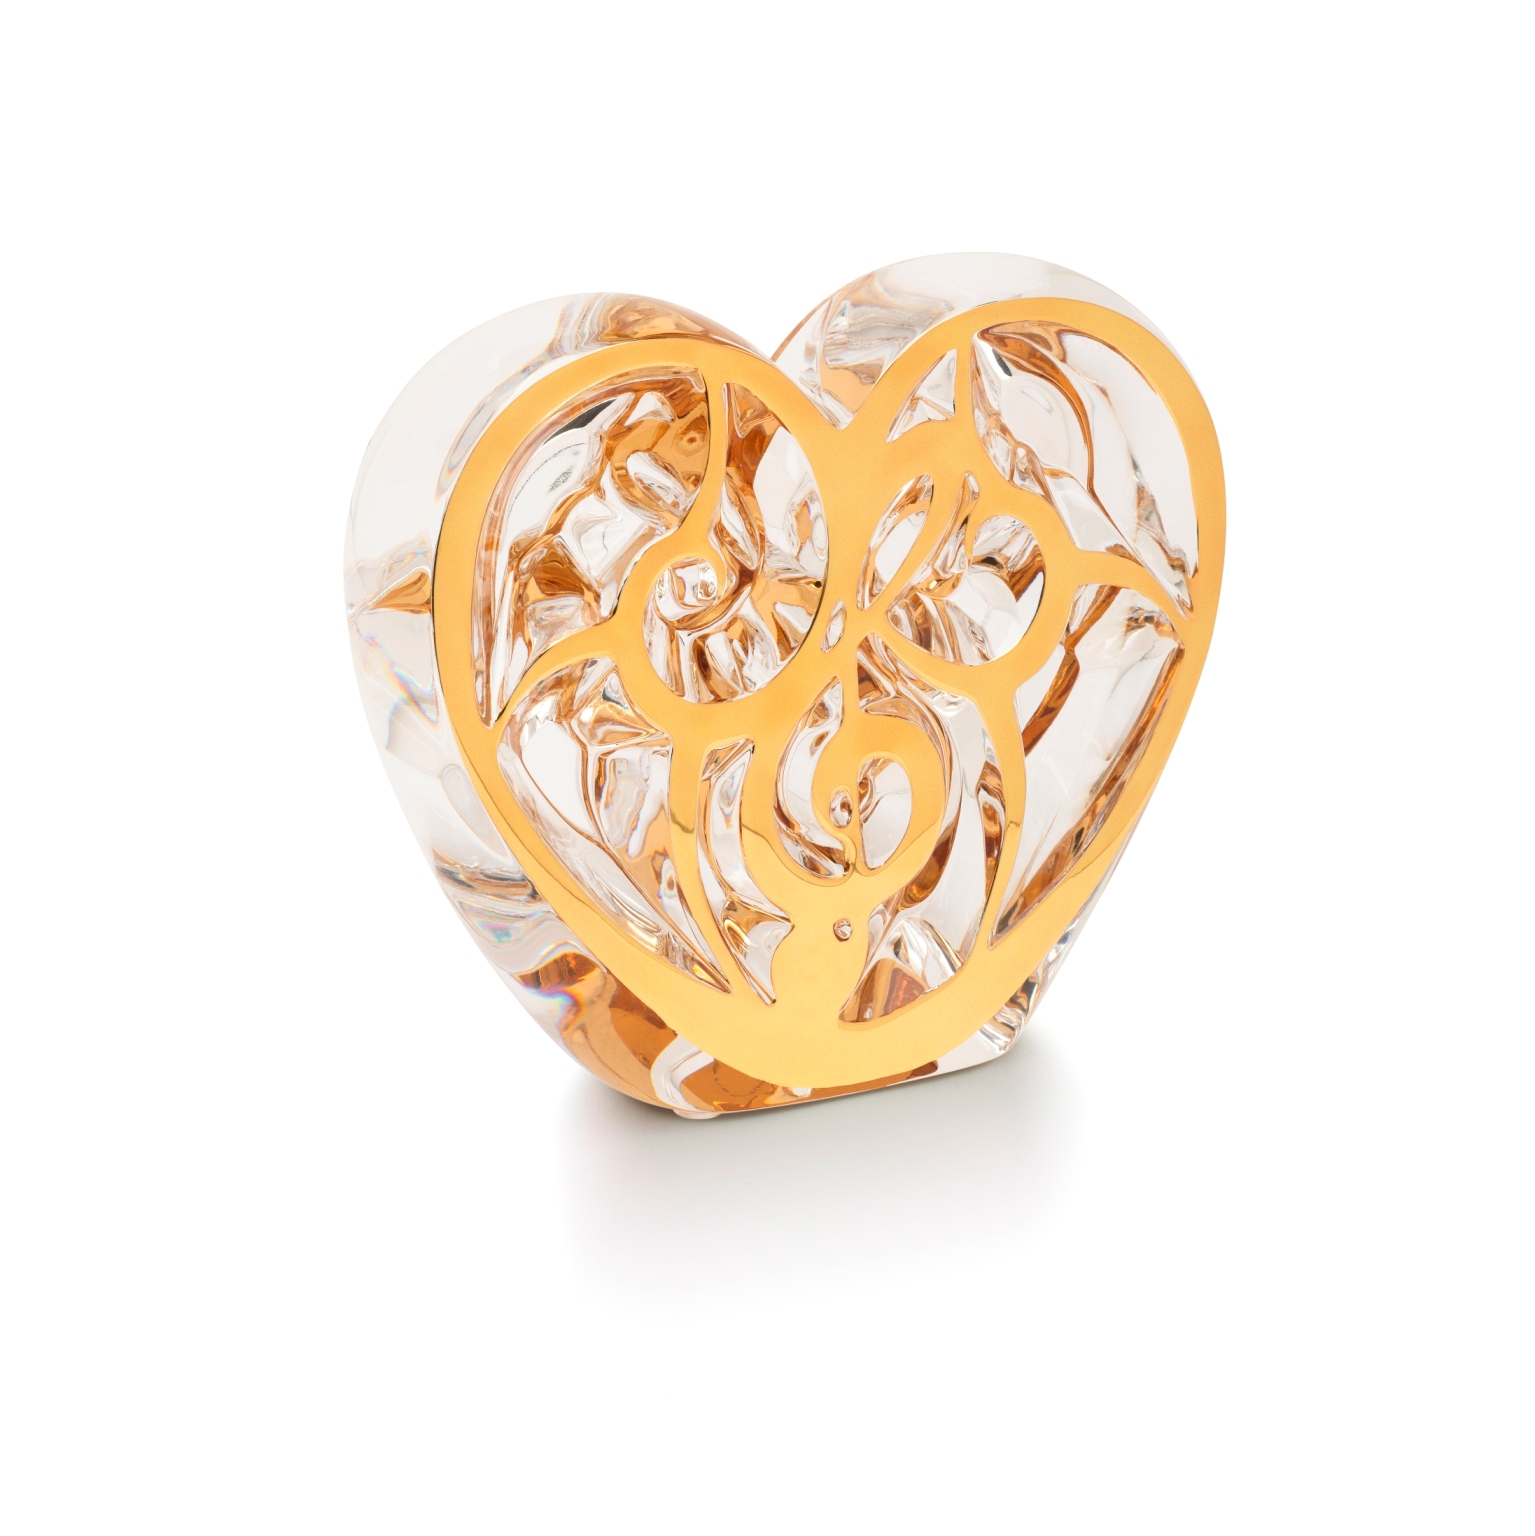 英國歌手艾爾頓強攜手法國水晶品牌LALIQUE打造「愛之天使」_義賣水晶雕刻抗愛滋4.jpg